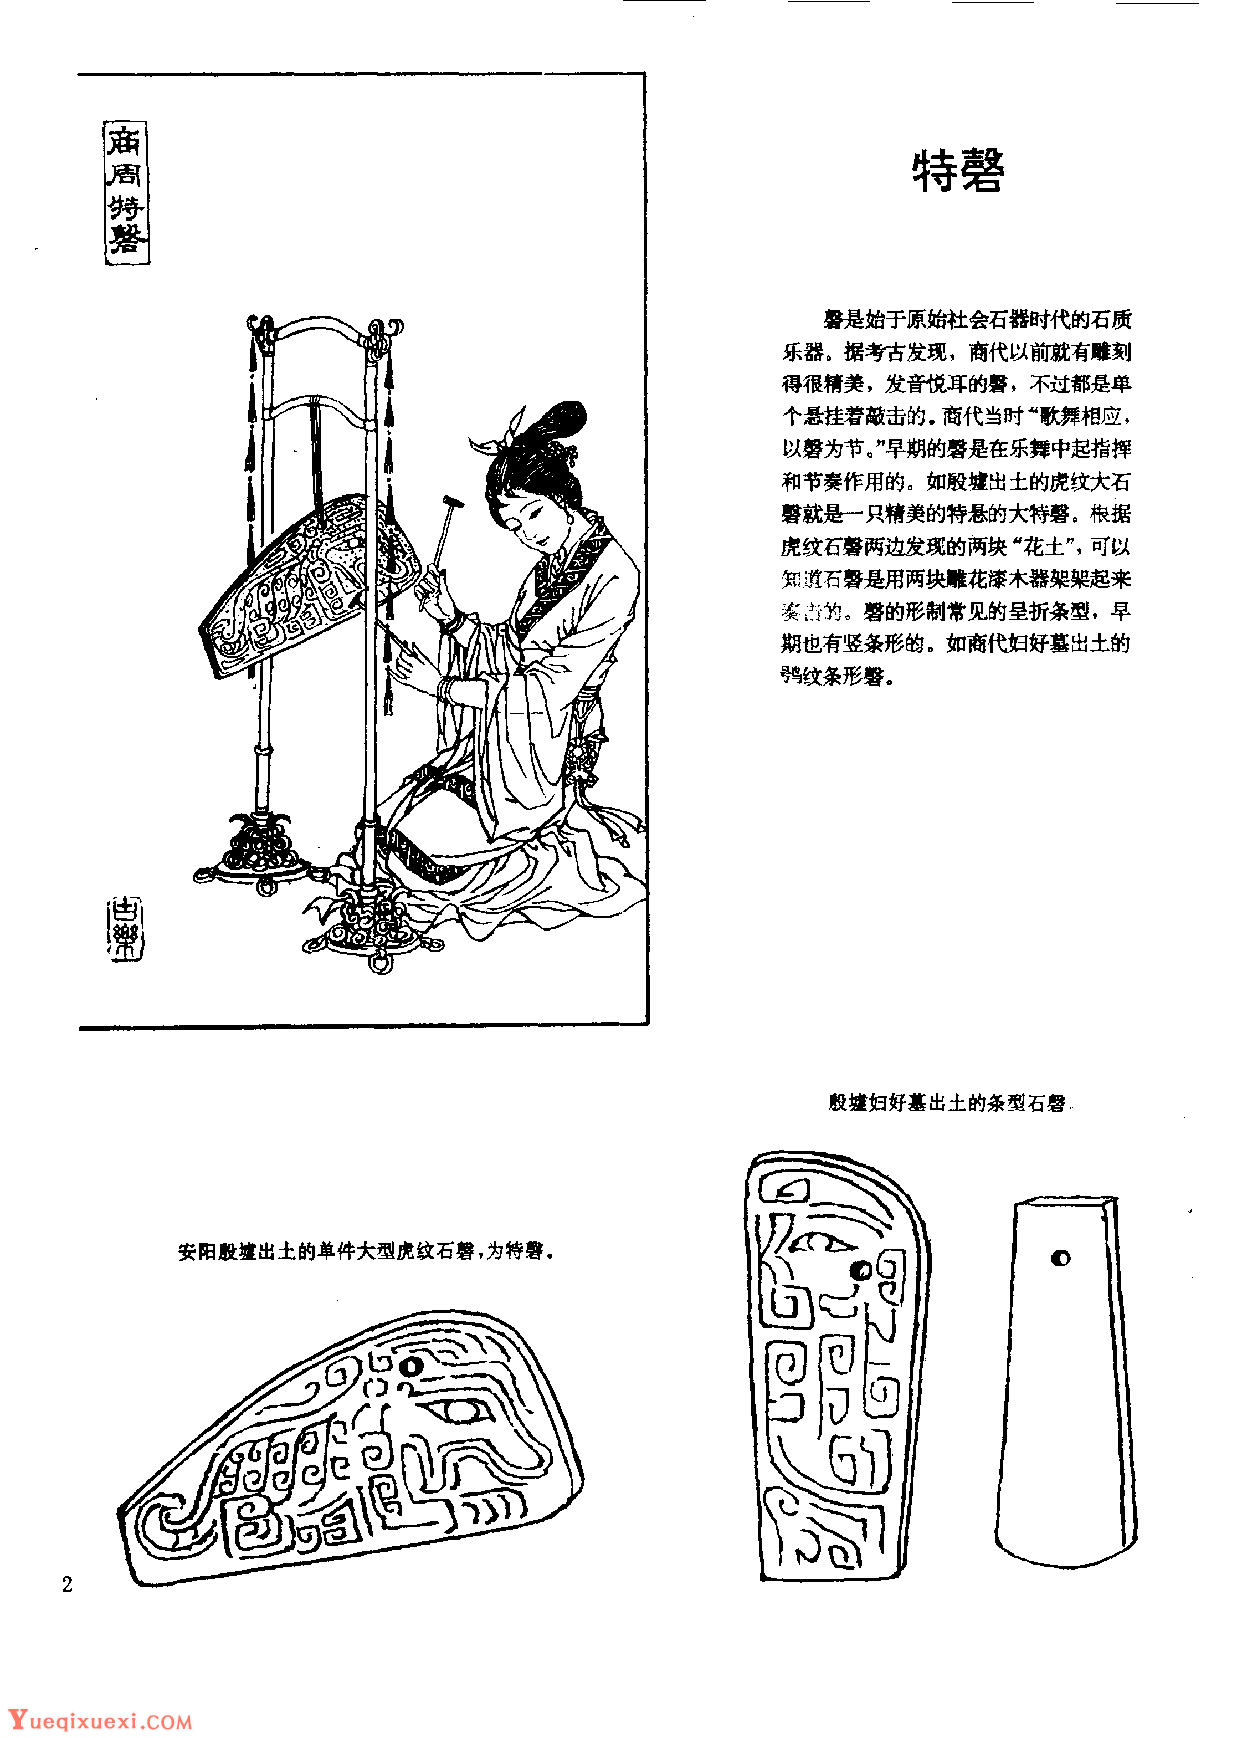 中国古代乐器《特磬》